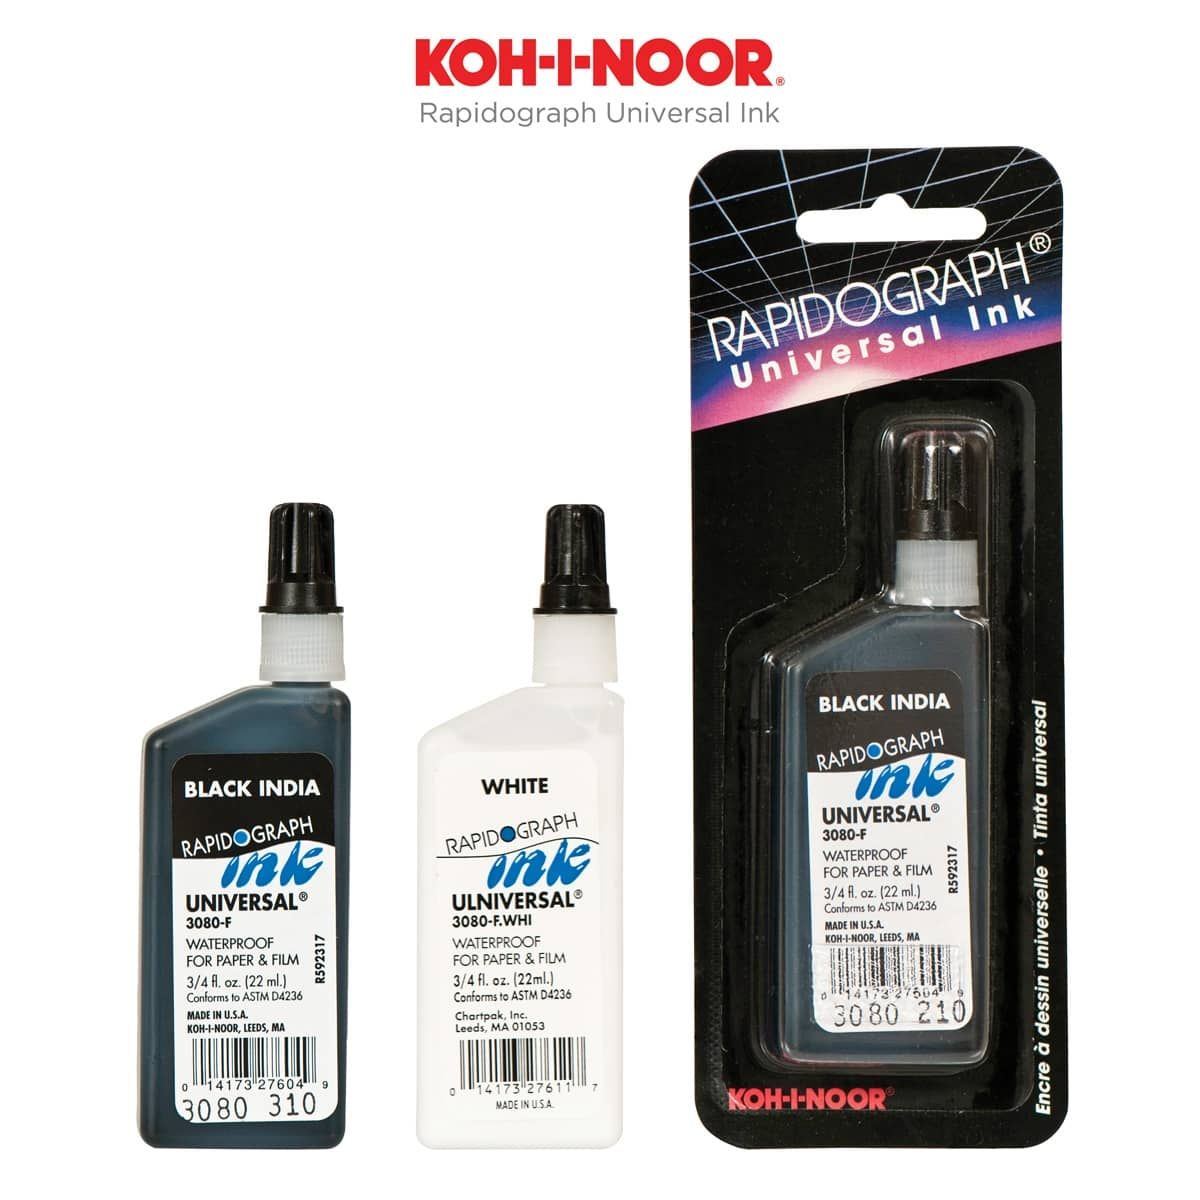 Koh-I-Noor Rapidograph Universal Inks